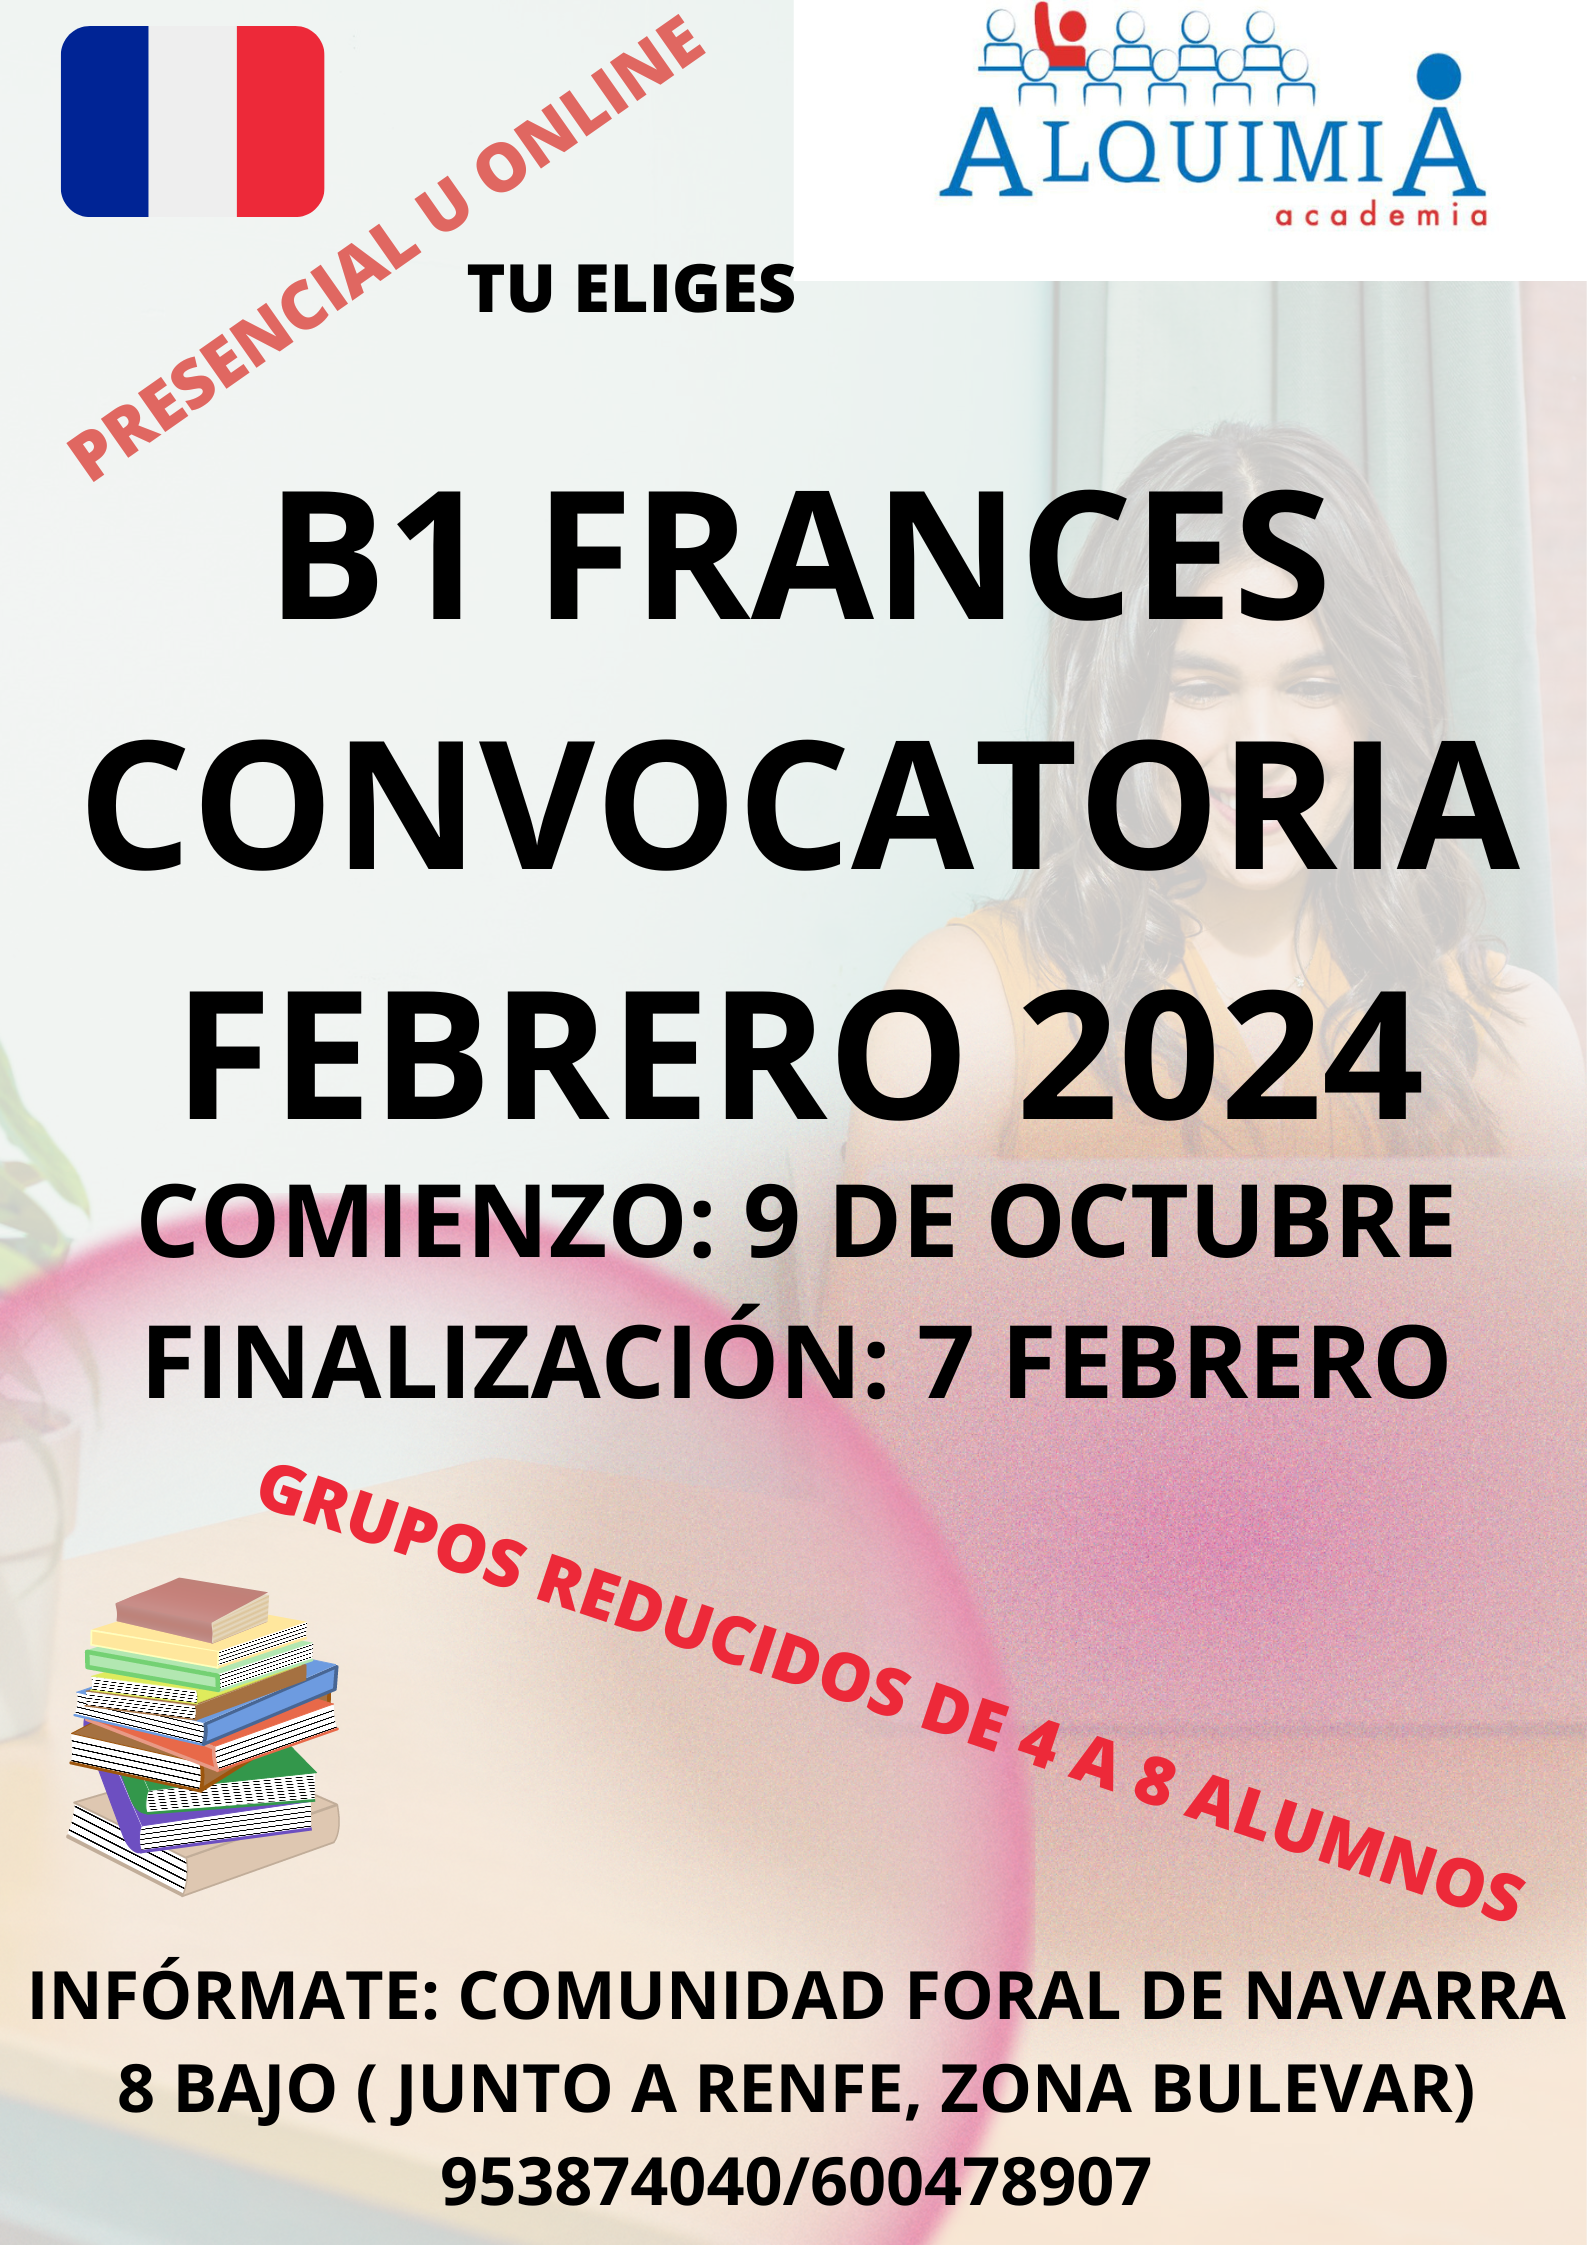 B1 DE FRANCES CONVOCATORIA FEBRERO 2024: NUESTRA OFERTA FORMATIVA de Alquimia